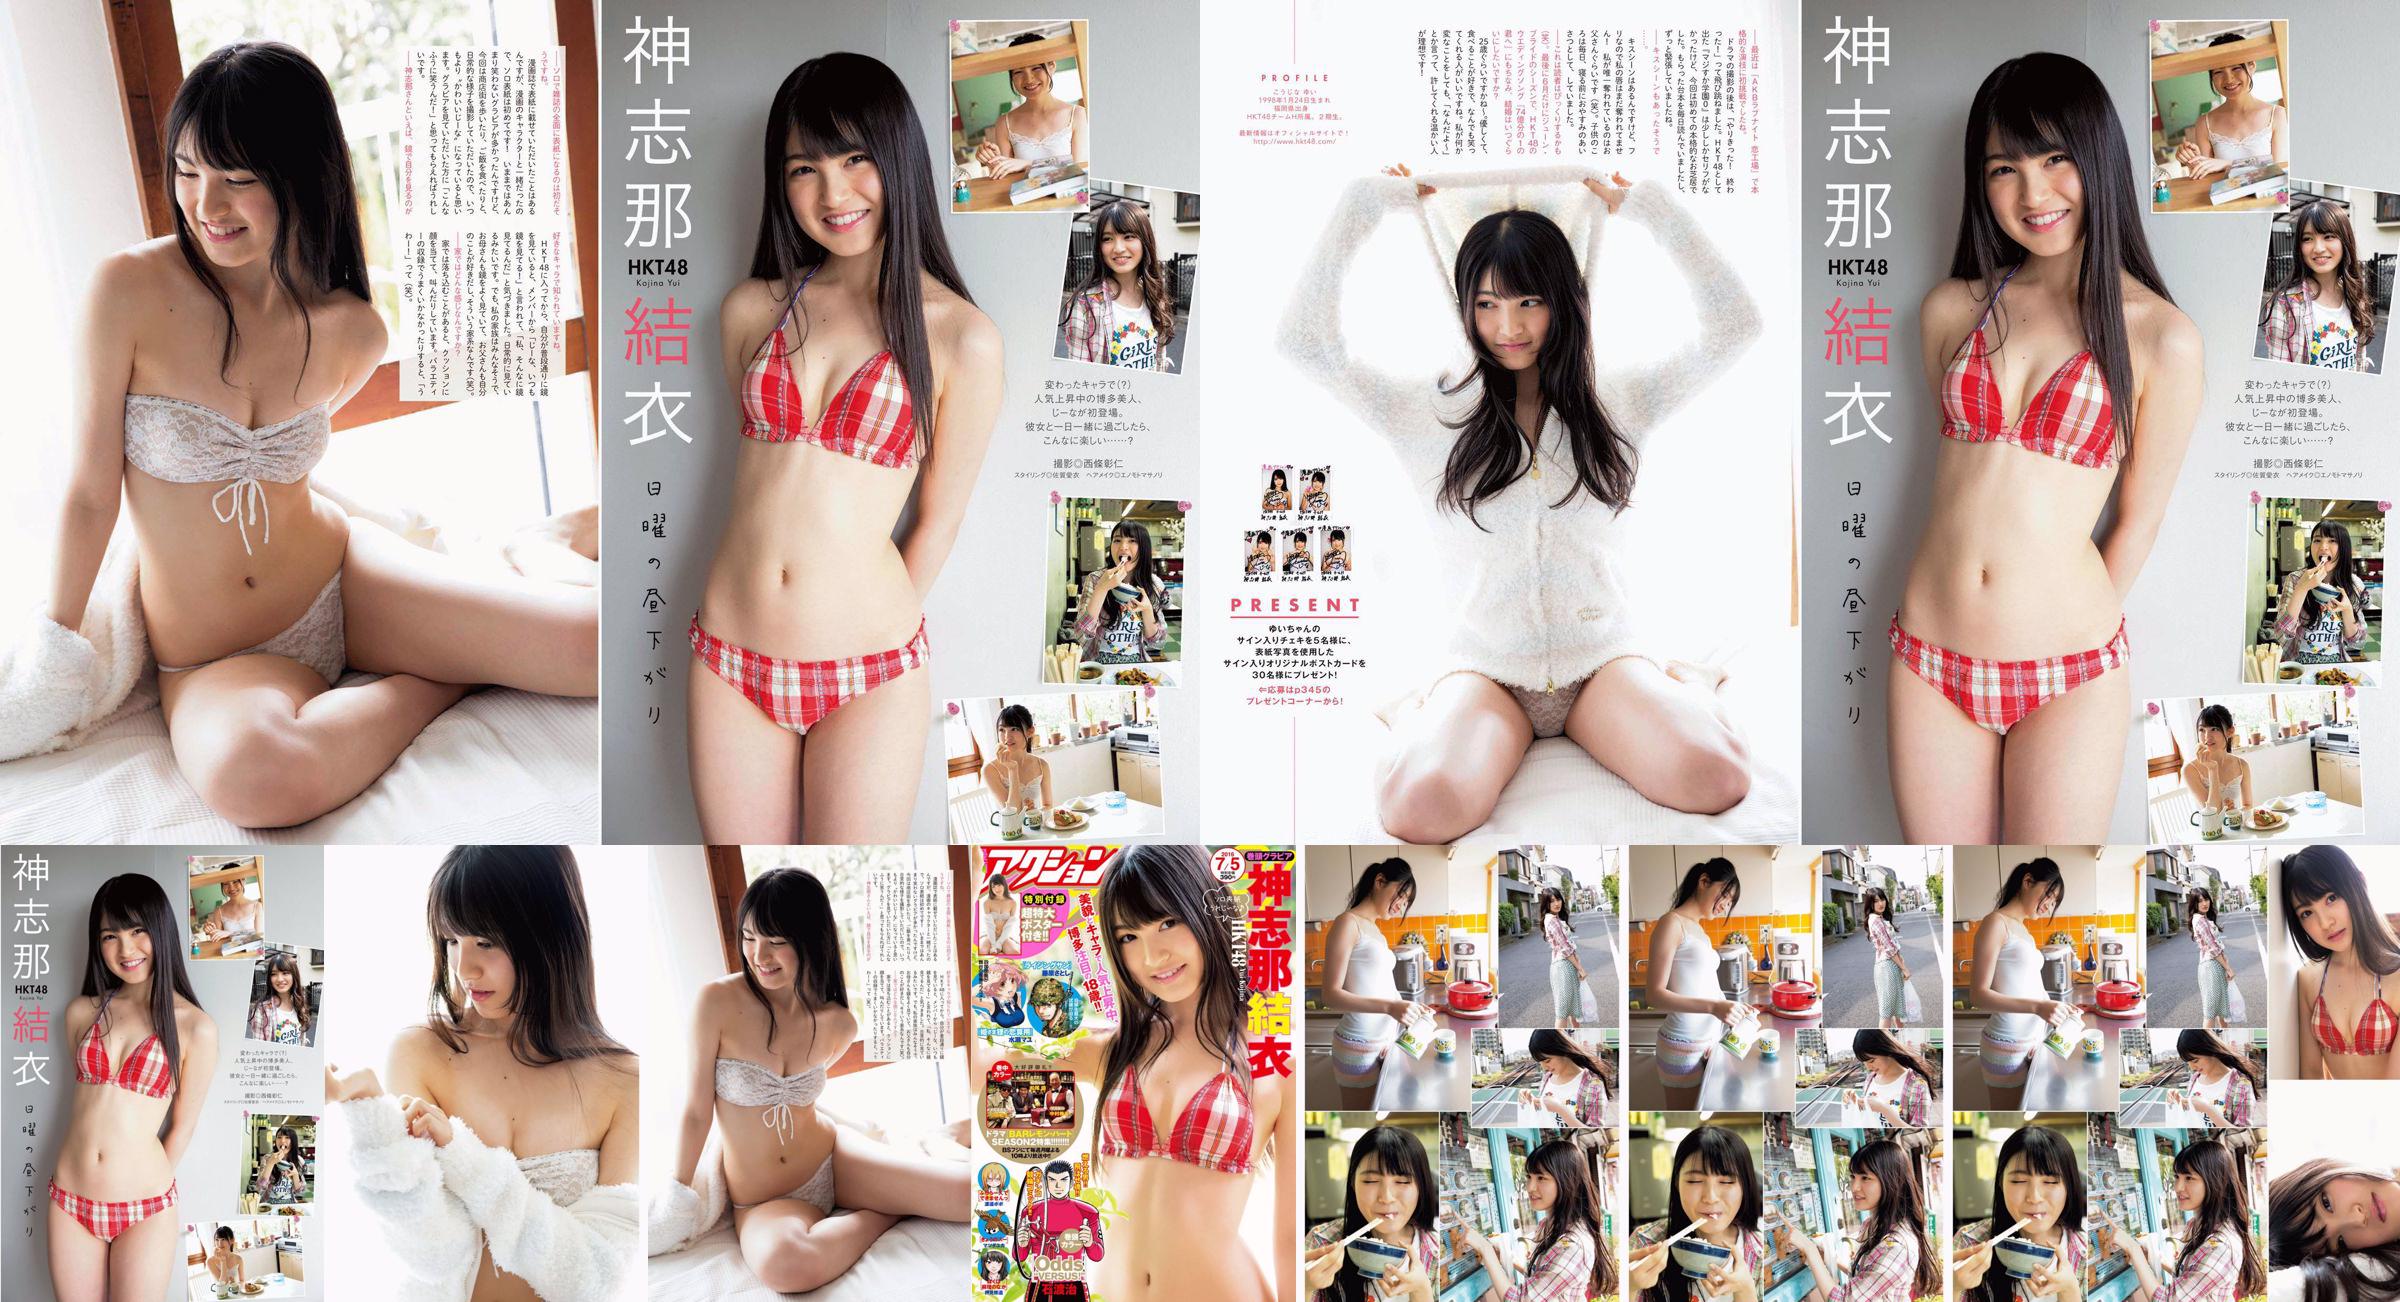 [Acción Manga] Shinshina Yui 2016 No.13 Photo Magazine No.8da88e Página 4